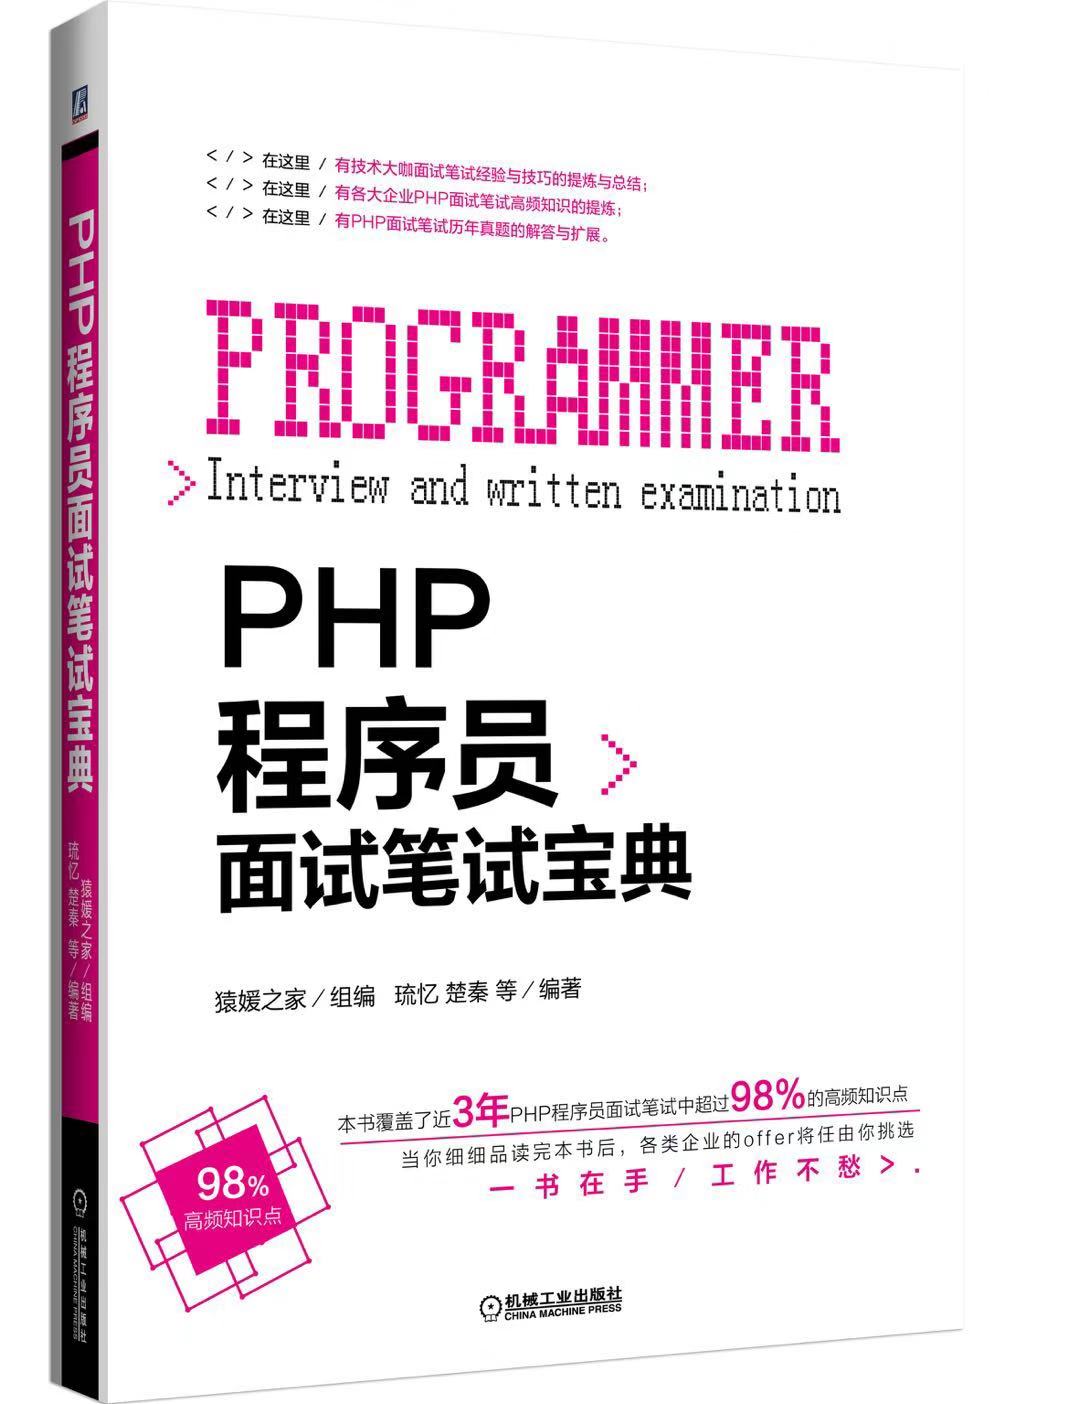 PHP 程序员面试笔试宝典